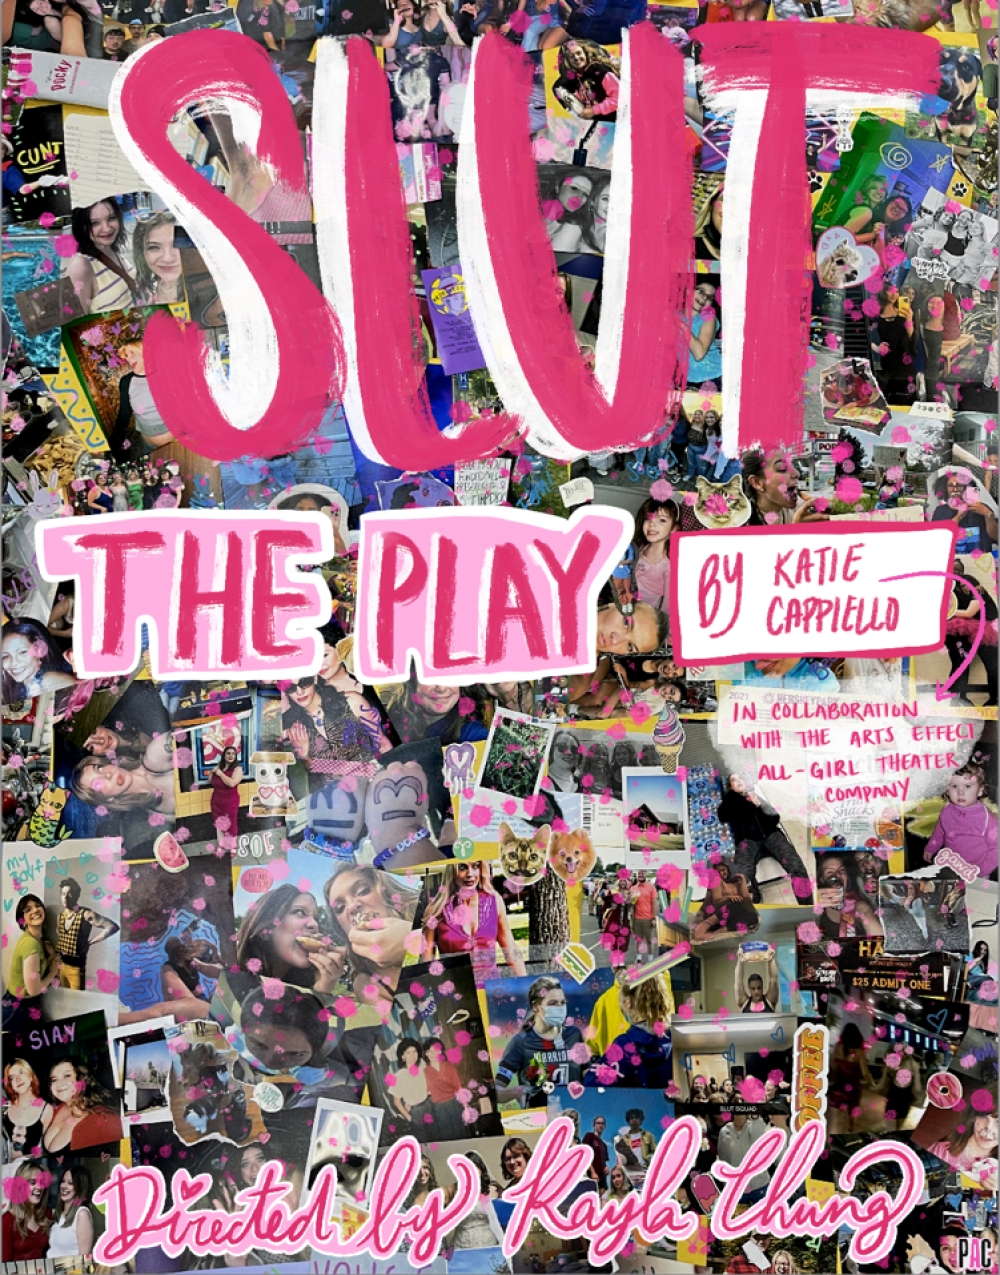 SLUT: The Play at Performing Arts Company